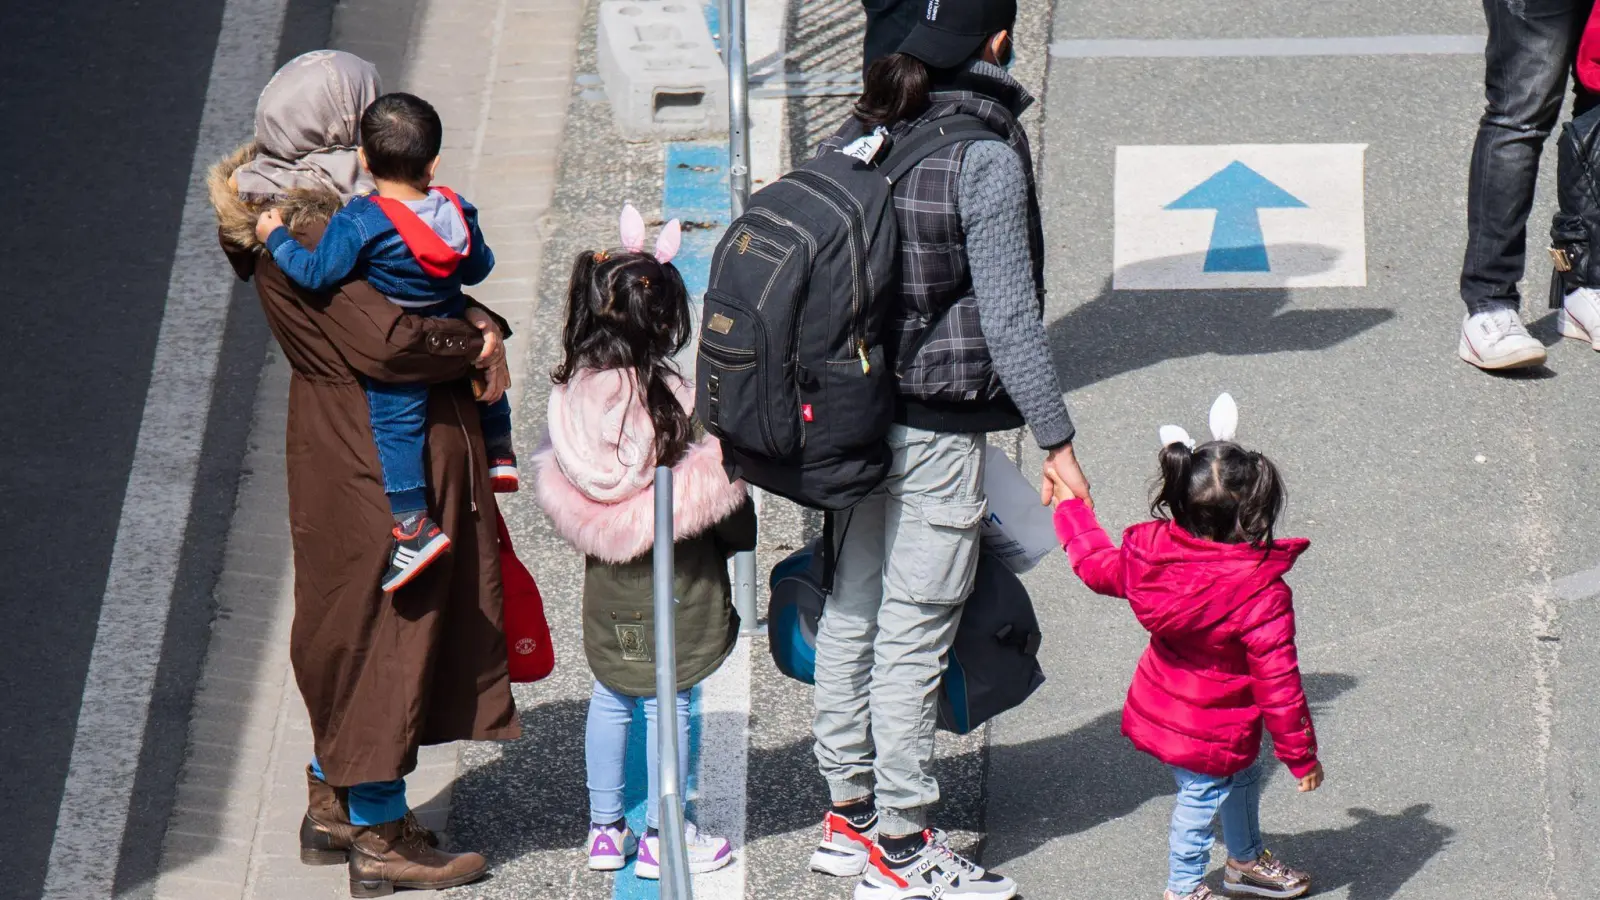 Flüchtlinge, die aus griechischen Flüchtlingslagern mit erbärmlichen Zuständen geholt wurden, kommen am Flughafen Hannover an. (Foto: Julian Stratenschulte/dpa)